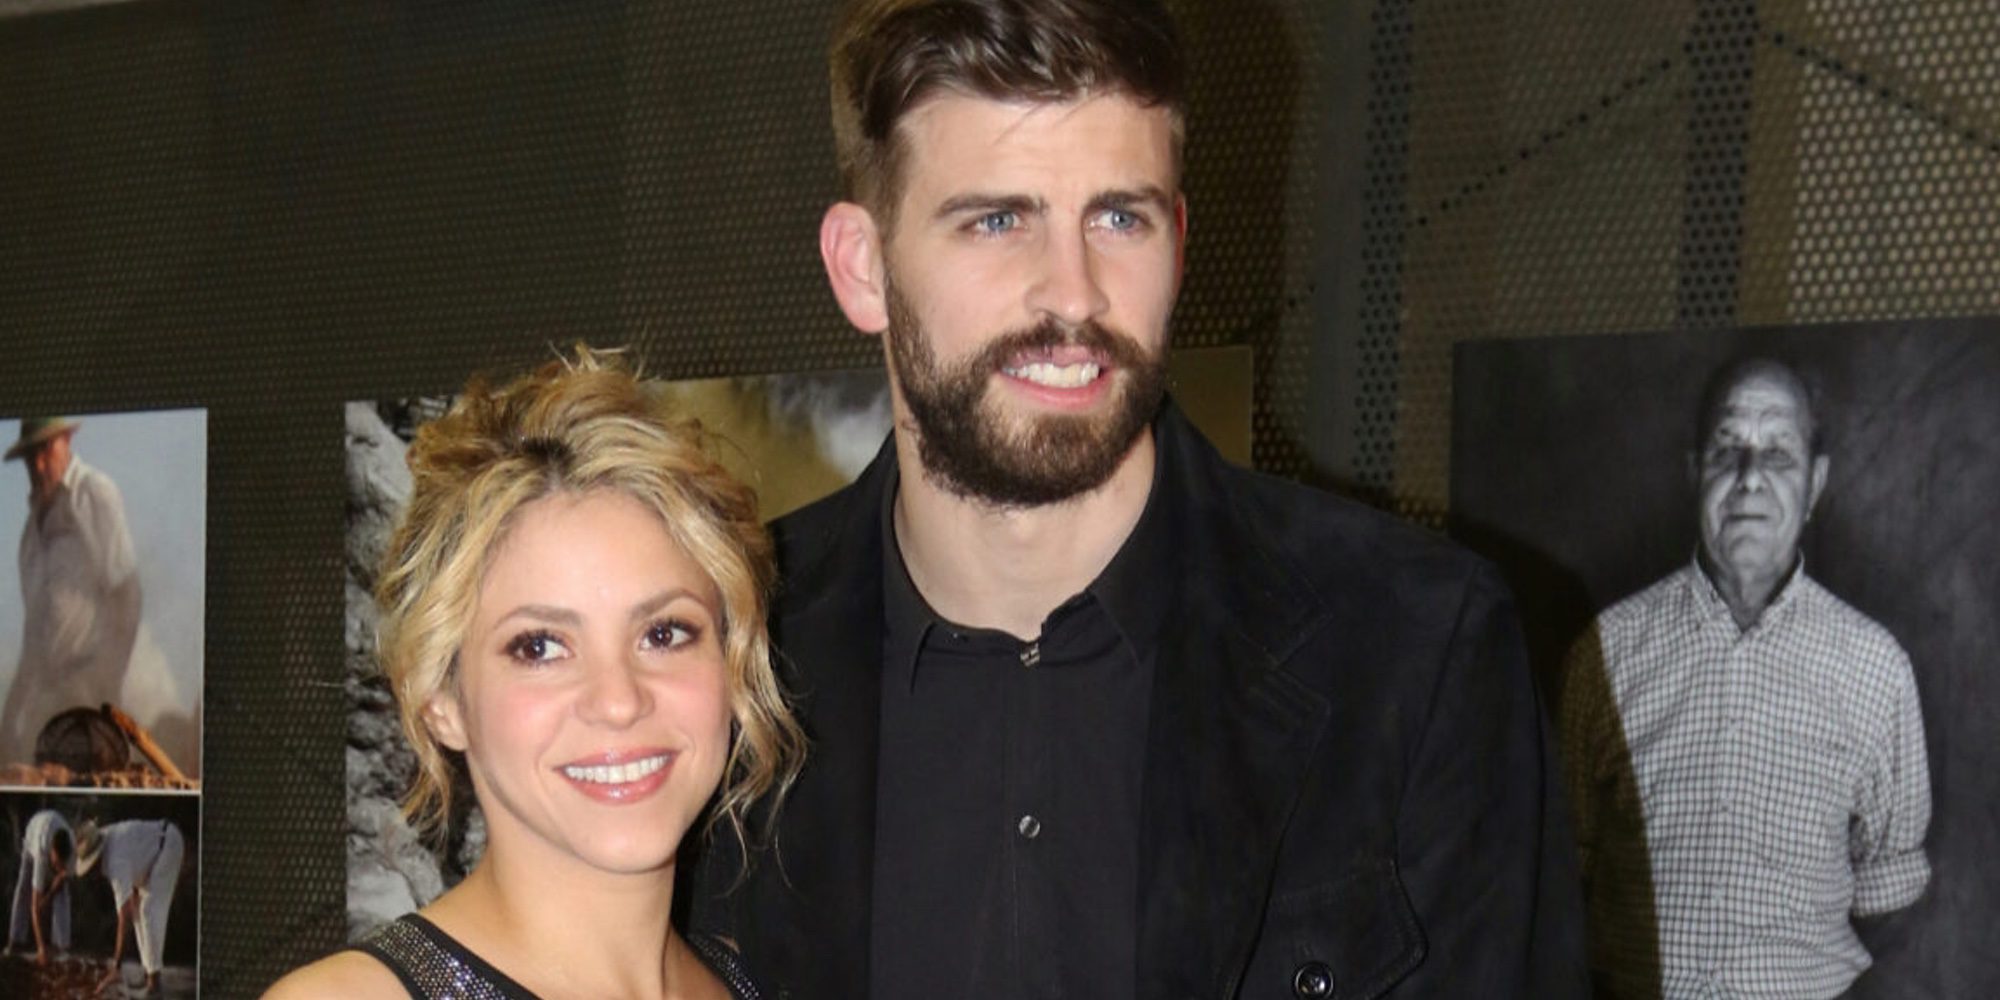 Cobran fuerza los rumores de ruptura entre Gerard Piqué y Shakira: "Ya no podía más con la situación"